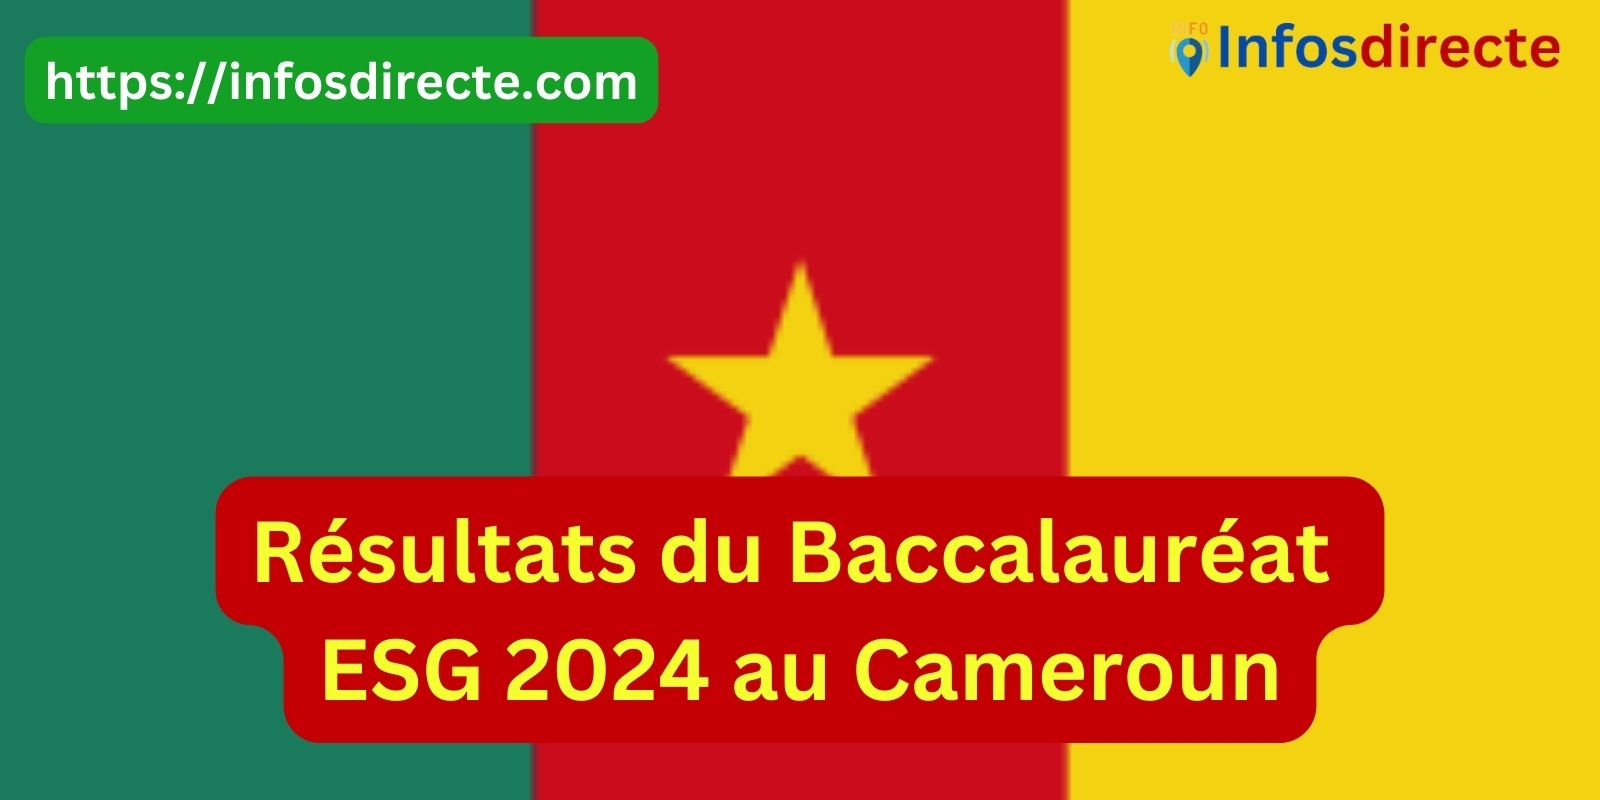 Les résultats du Baccalauréat ESG 2024 au Cameroun attendus le 12 juillet